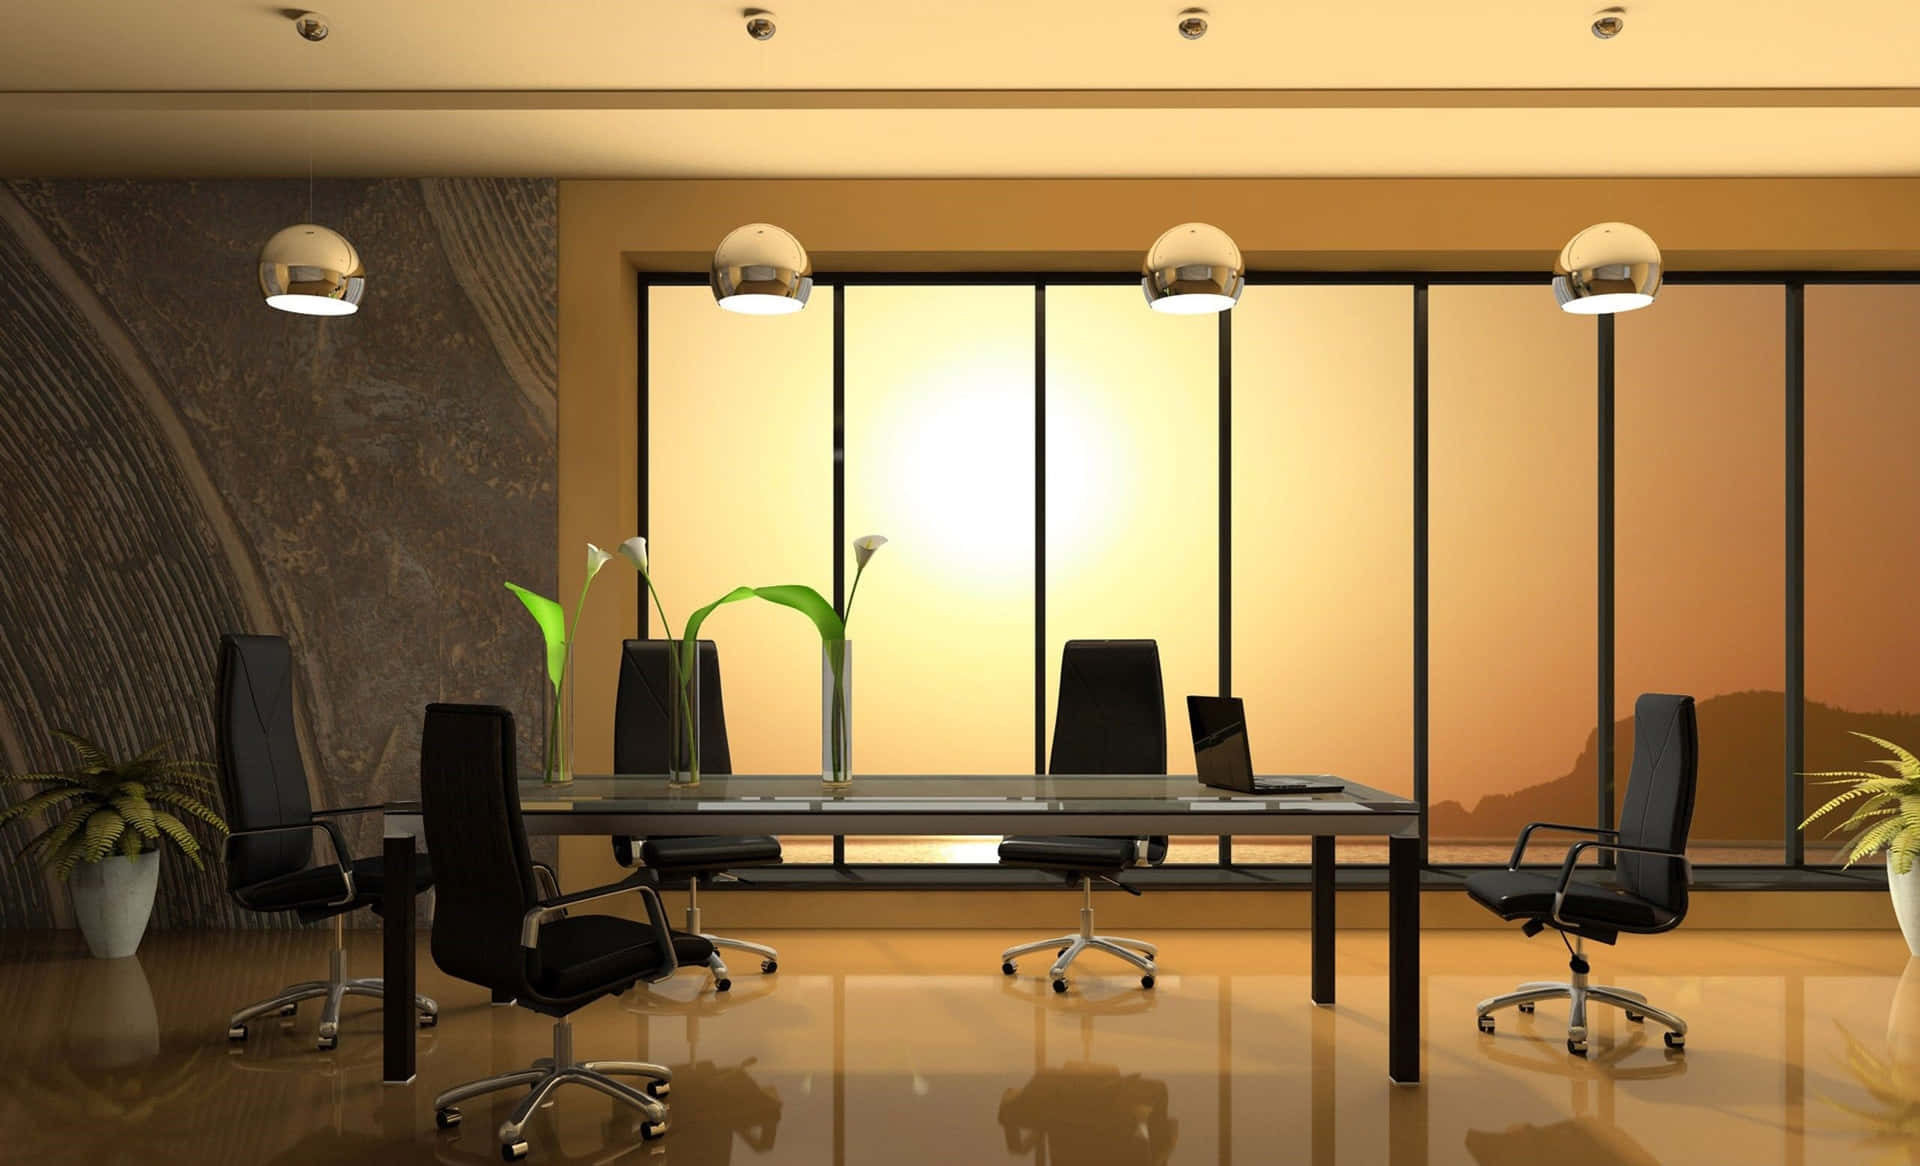 Sonnenuntergangim Konferenzraum 1440p Bürohintergrund